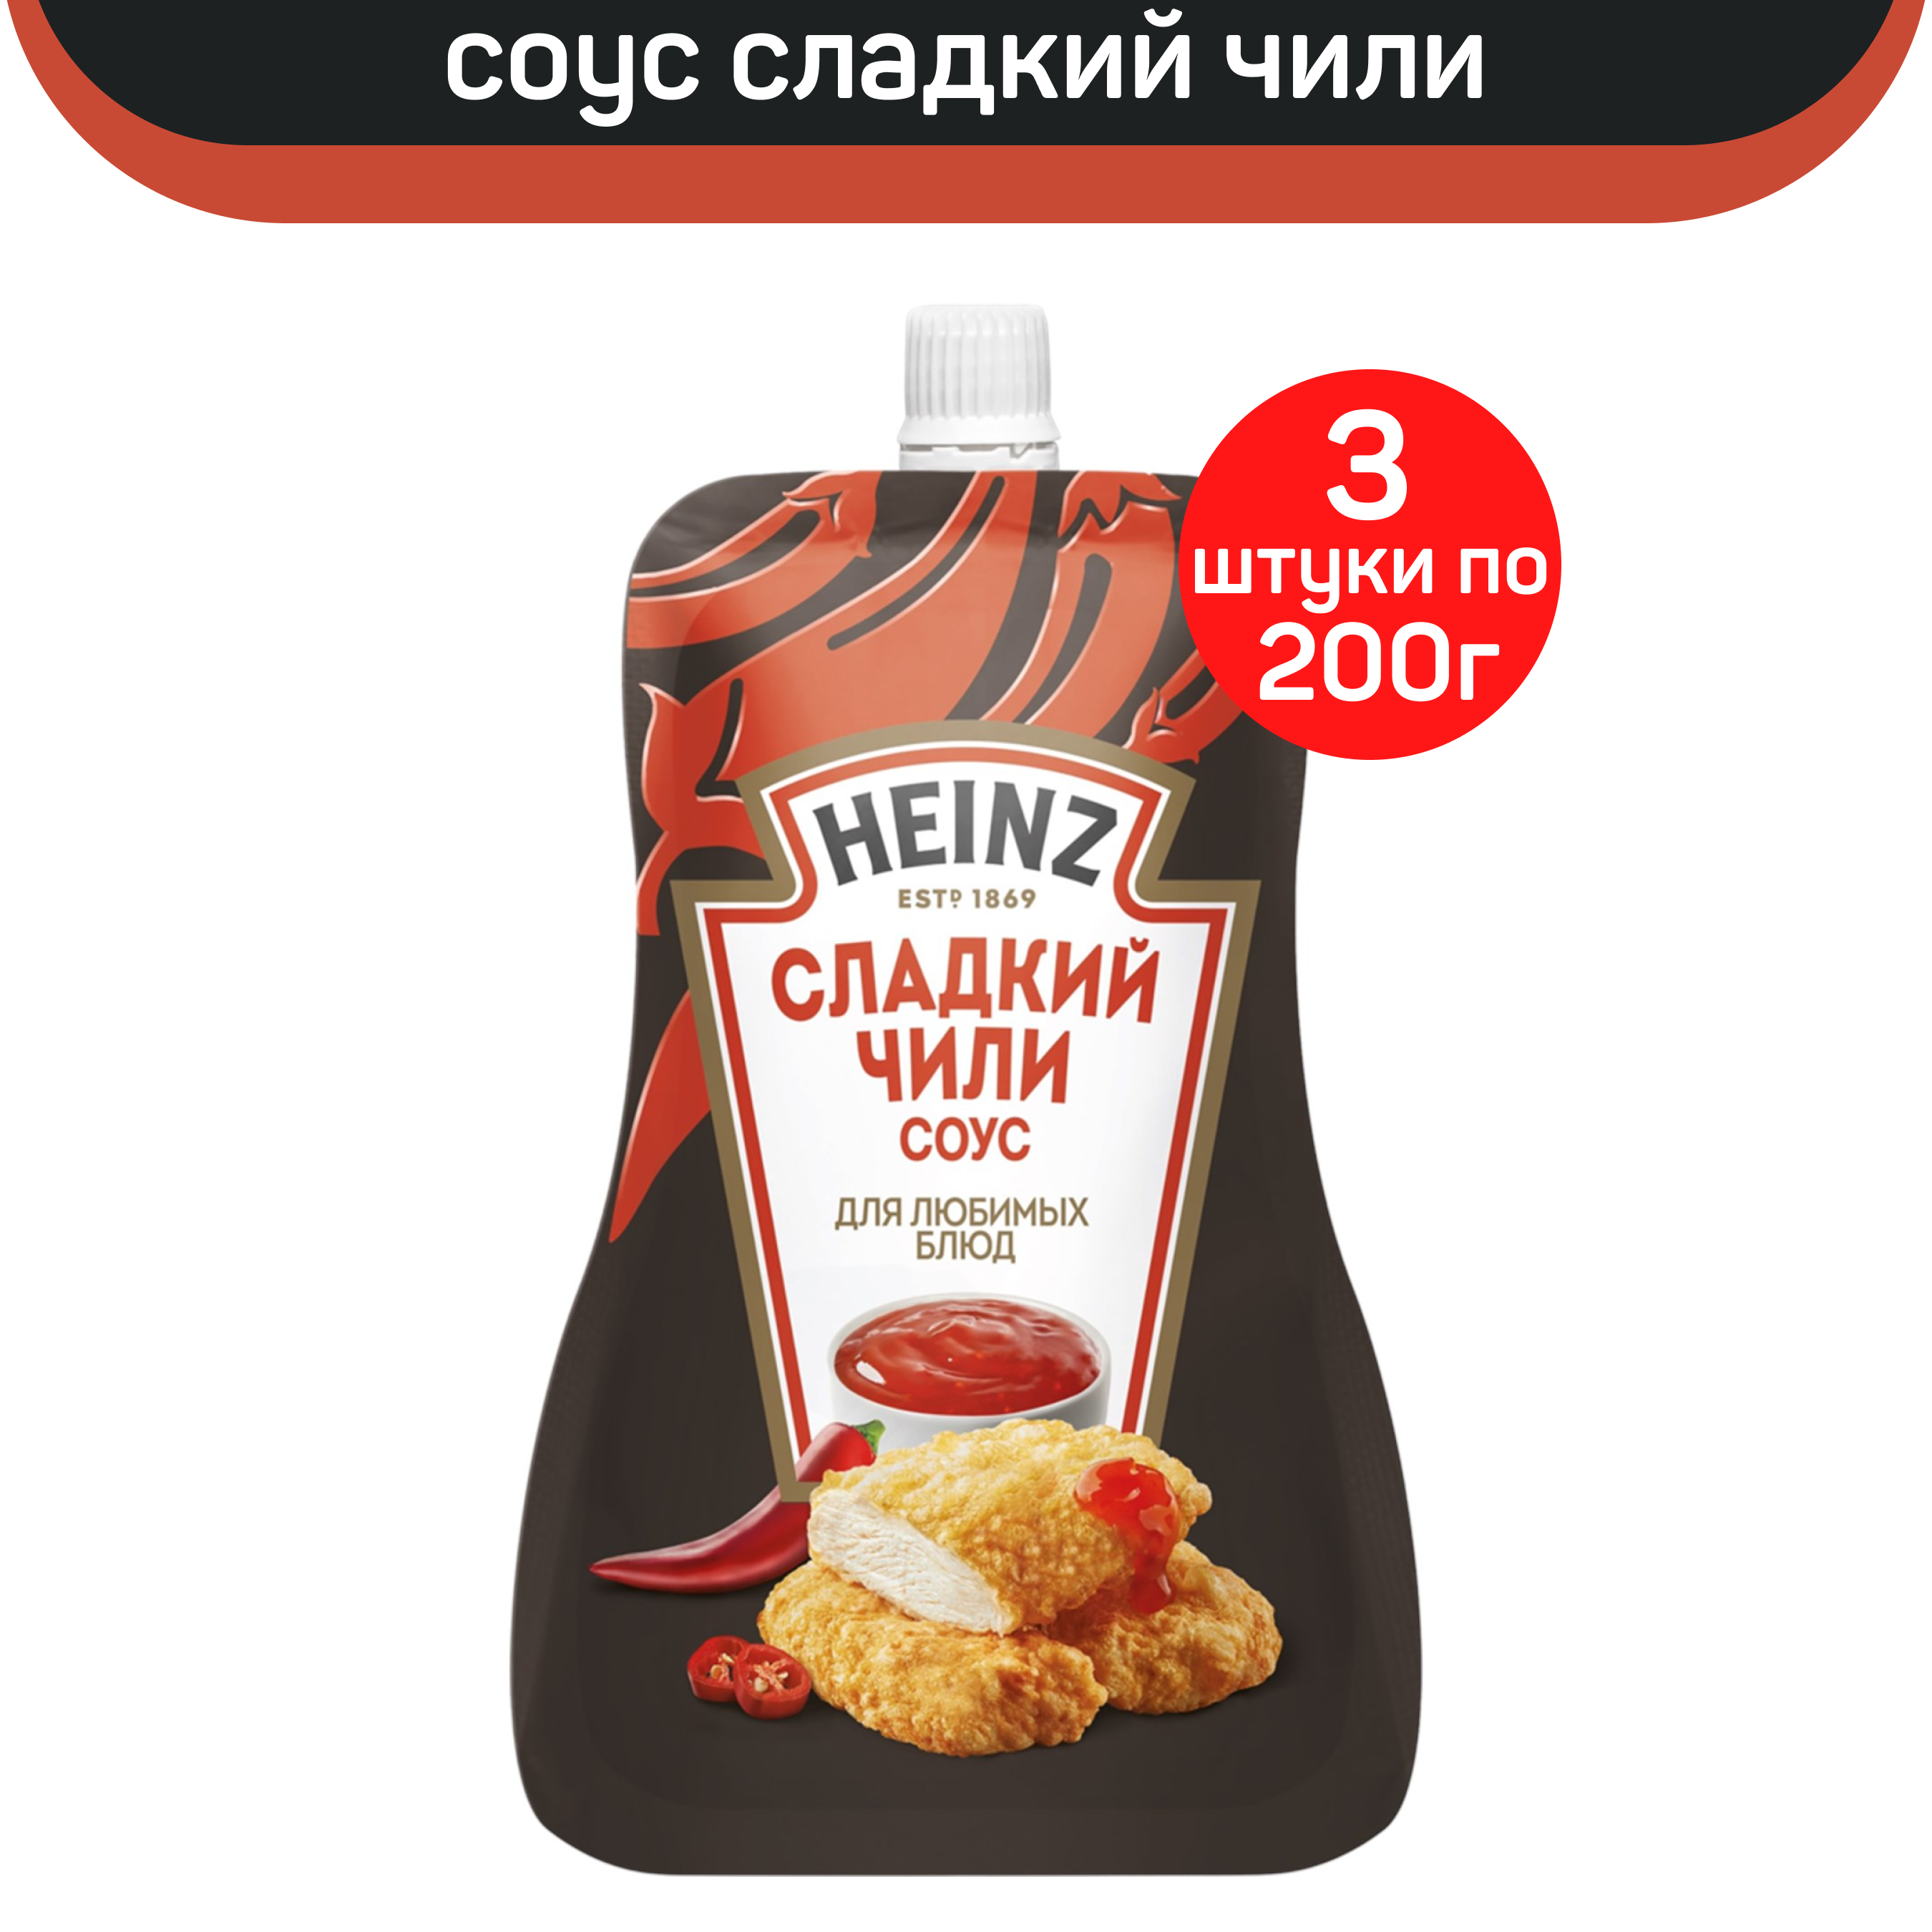 Соус Heinz деликатесный Сладкий чили, 3 шт по 200 г